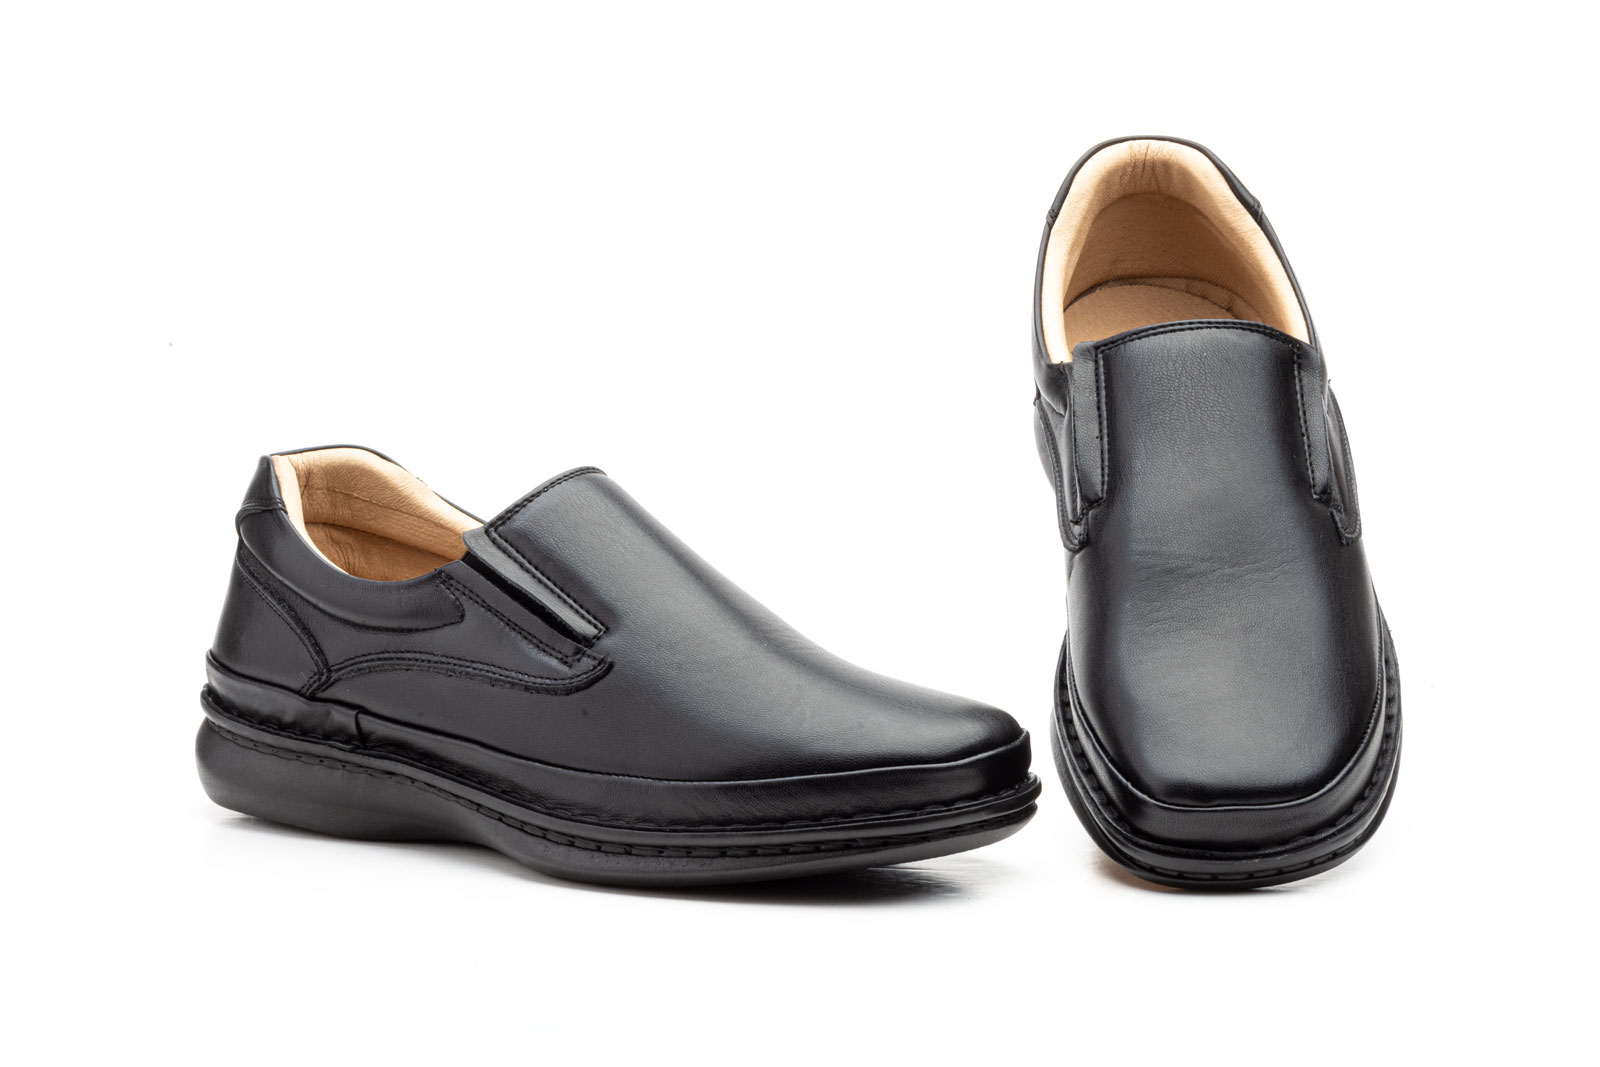 Zapatos Hombre Piel Negro Elásticos  -  Ref. CT-9004 Negro